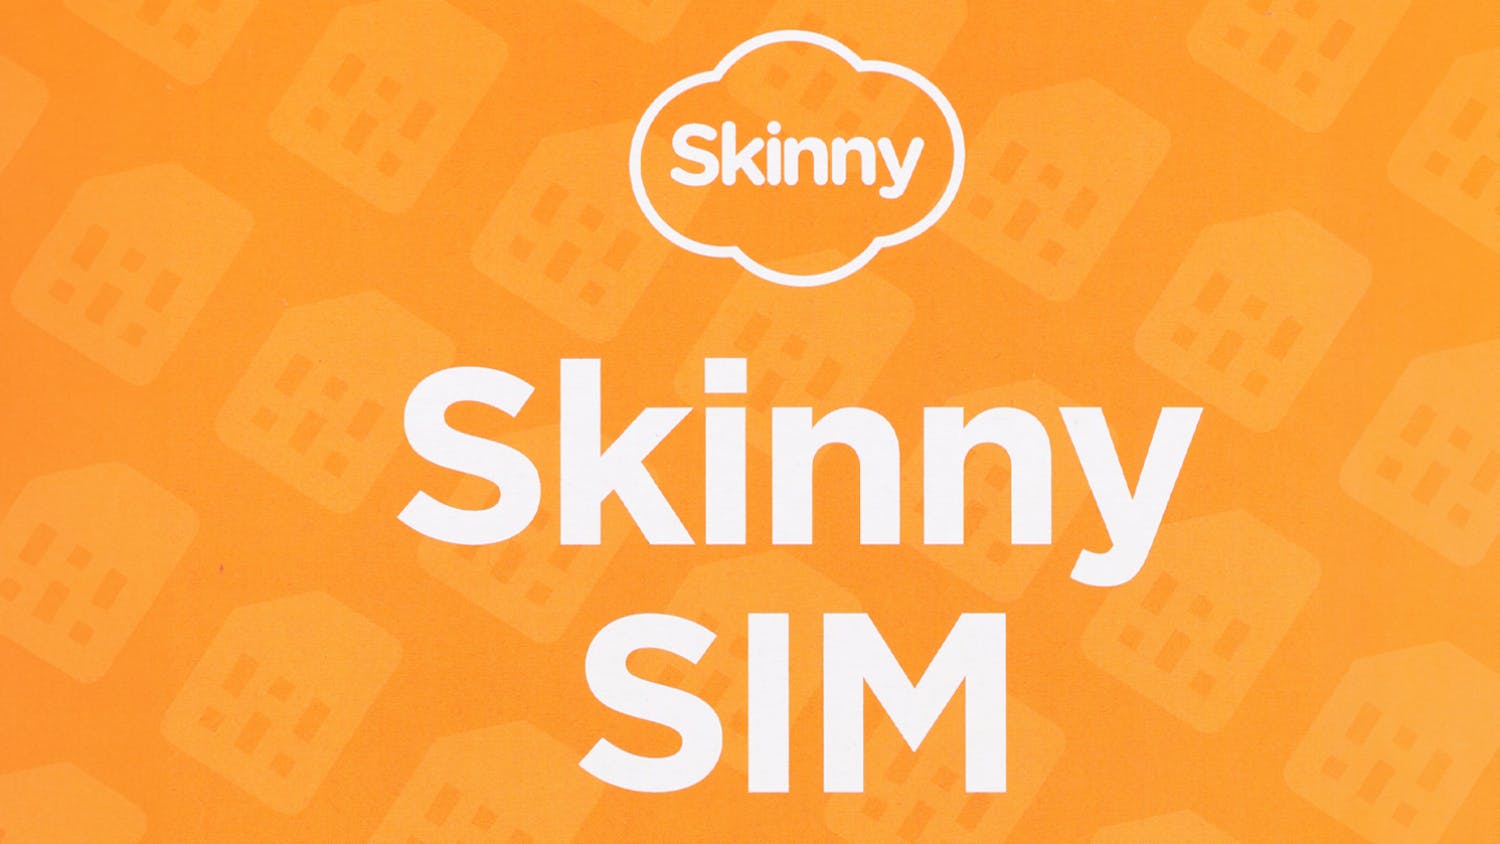 Skinny 5G Prepay 3-in-1 SIM